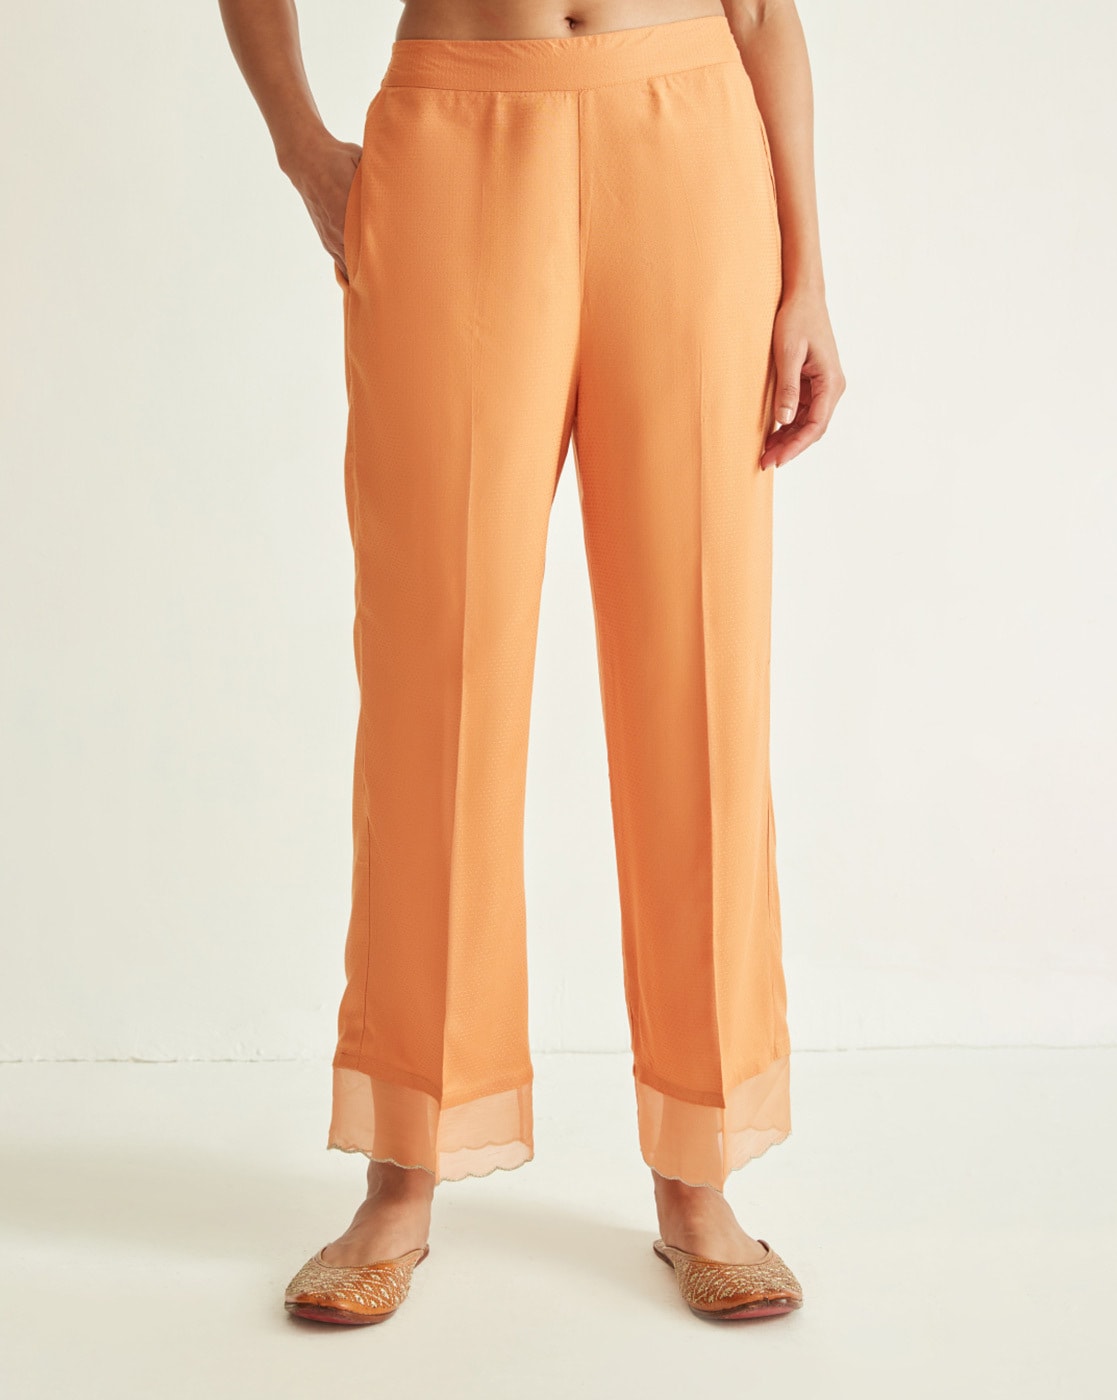 Mango Beige Trousers  Buy Mango Beige Trousers online in India